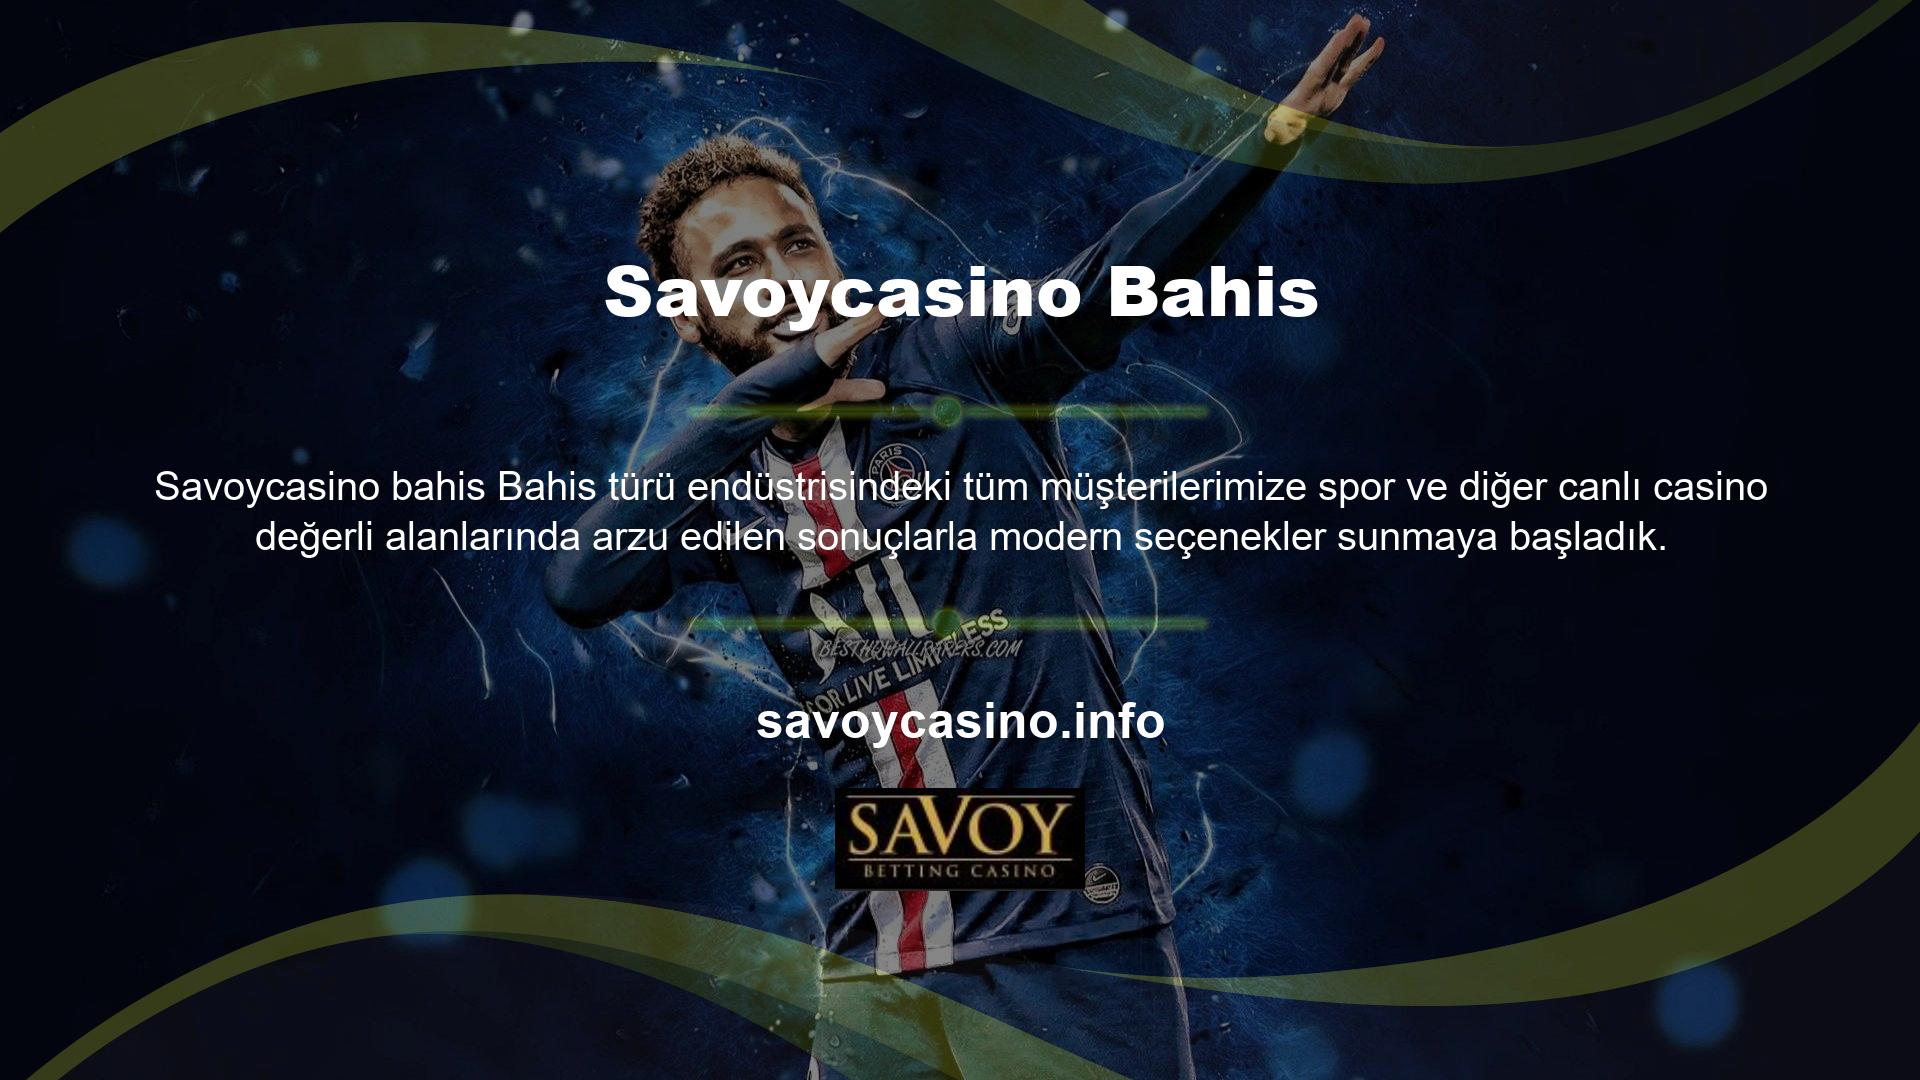 İçinde bulunduğumuz çağda Savoycasino Spor Bahisleri sayesinde canlı casino oyunlarına ve güncellenmiş yapılandırma seçeneklerine artık herkes erişebilir